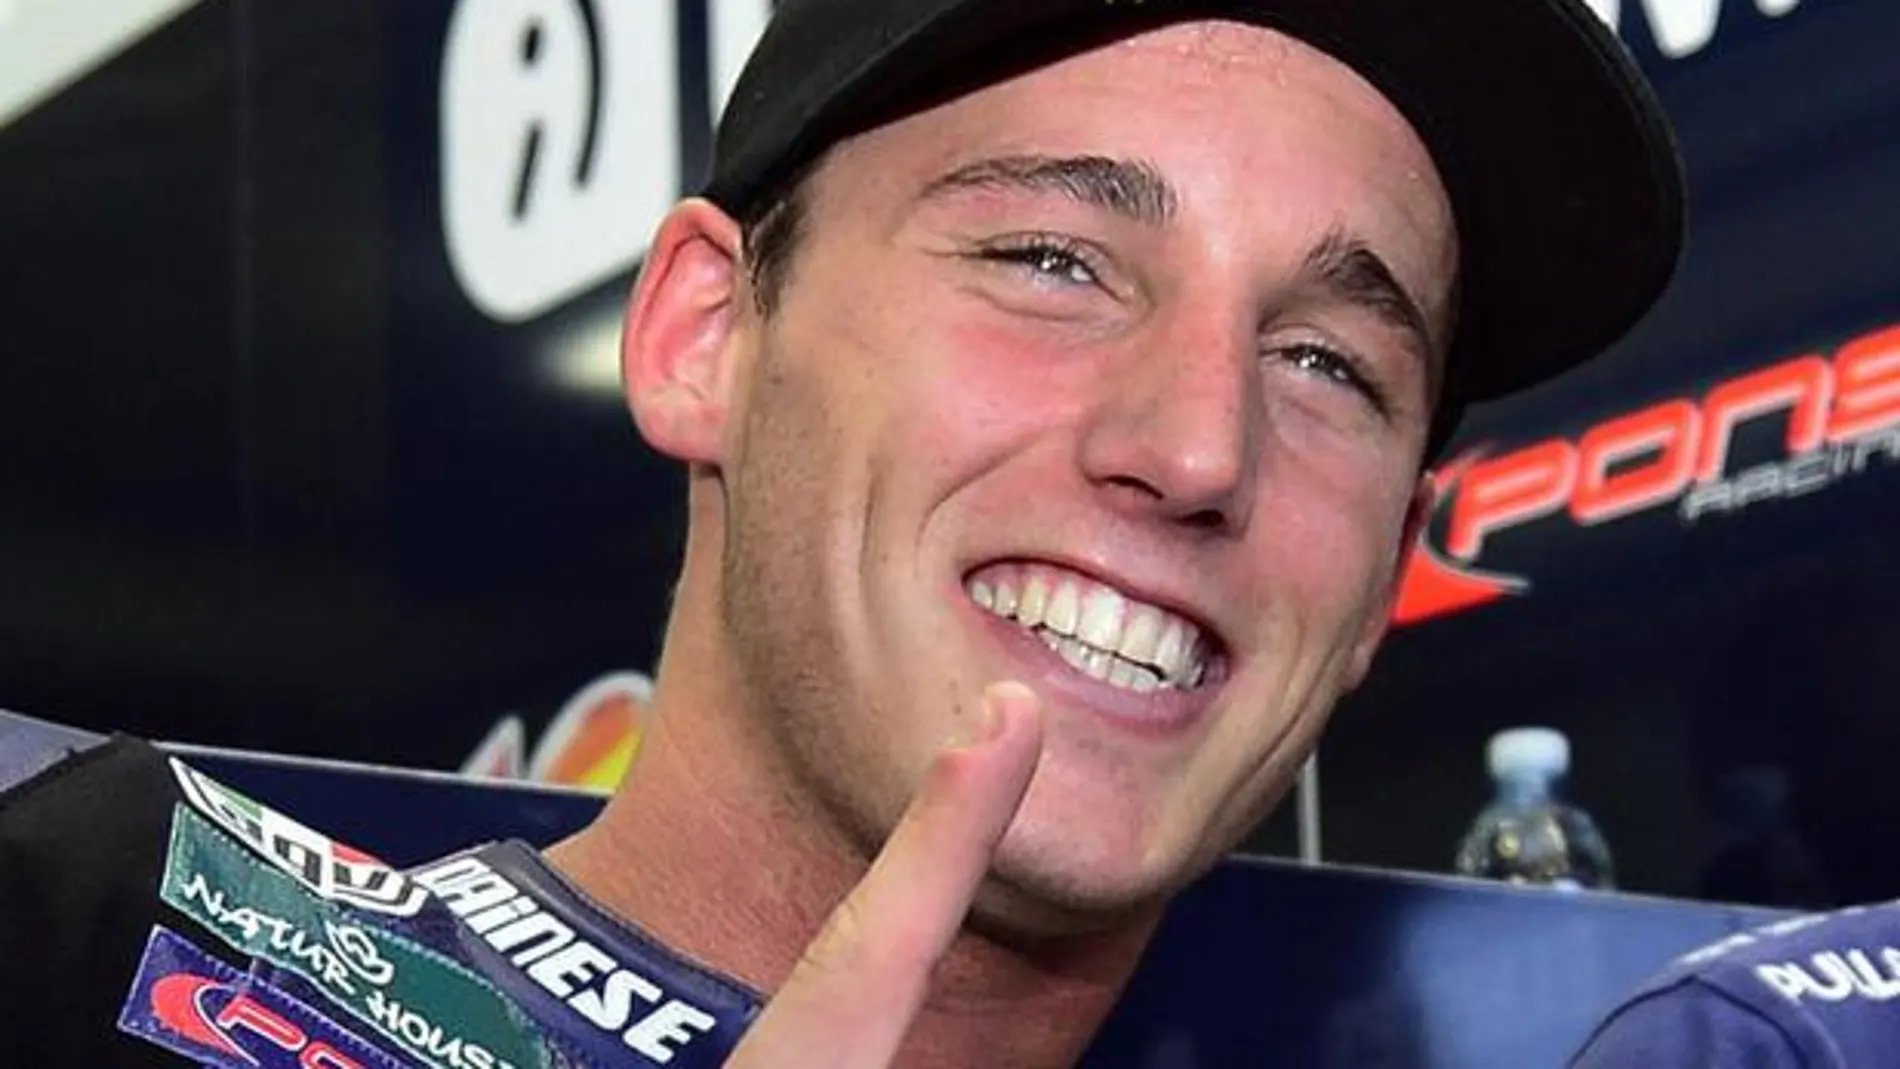 A sus 22 años, Pol Espargaró se convierte en cuarto campeón de Moto2